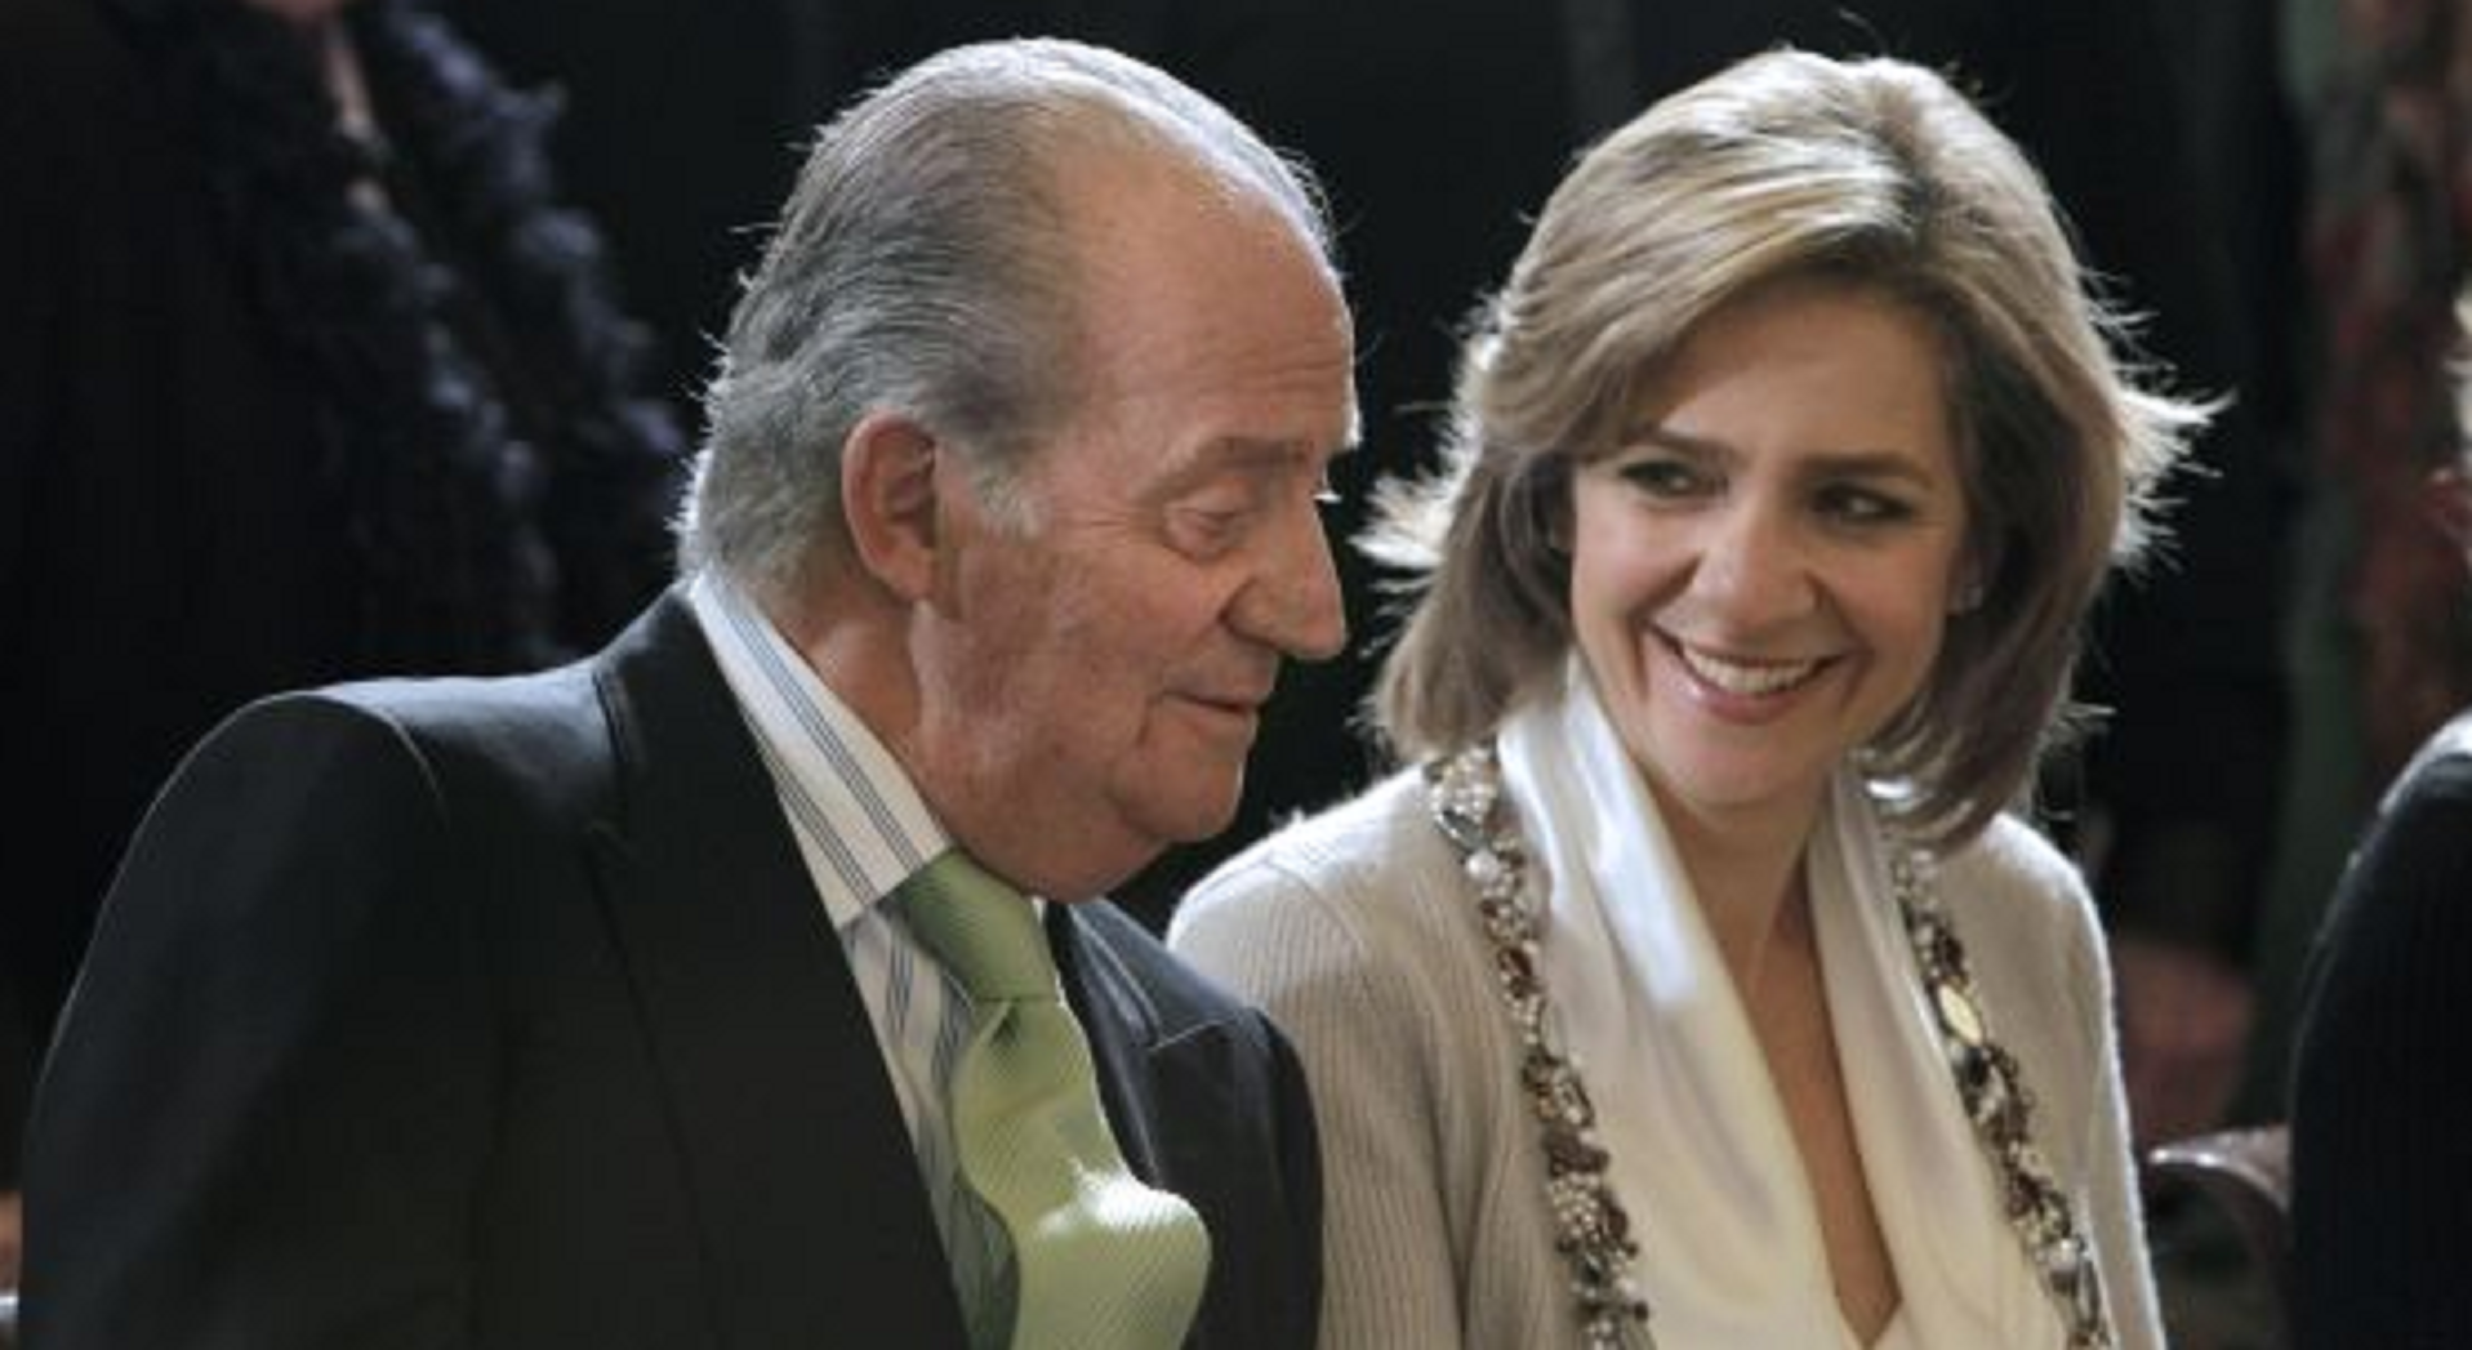 Los ‘sicarios’ de Juan Carlos I para salvar a la infanta Cristina, amenazas, sabotajes y miedo